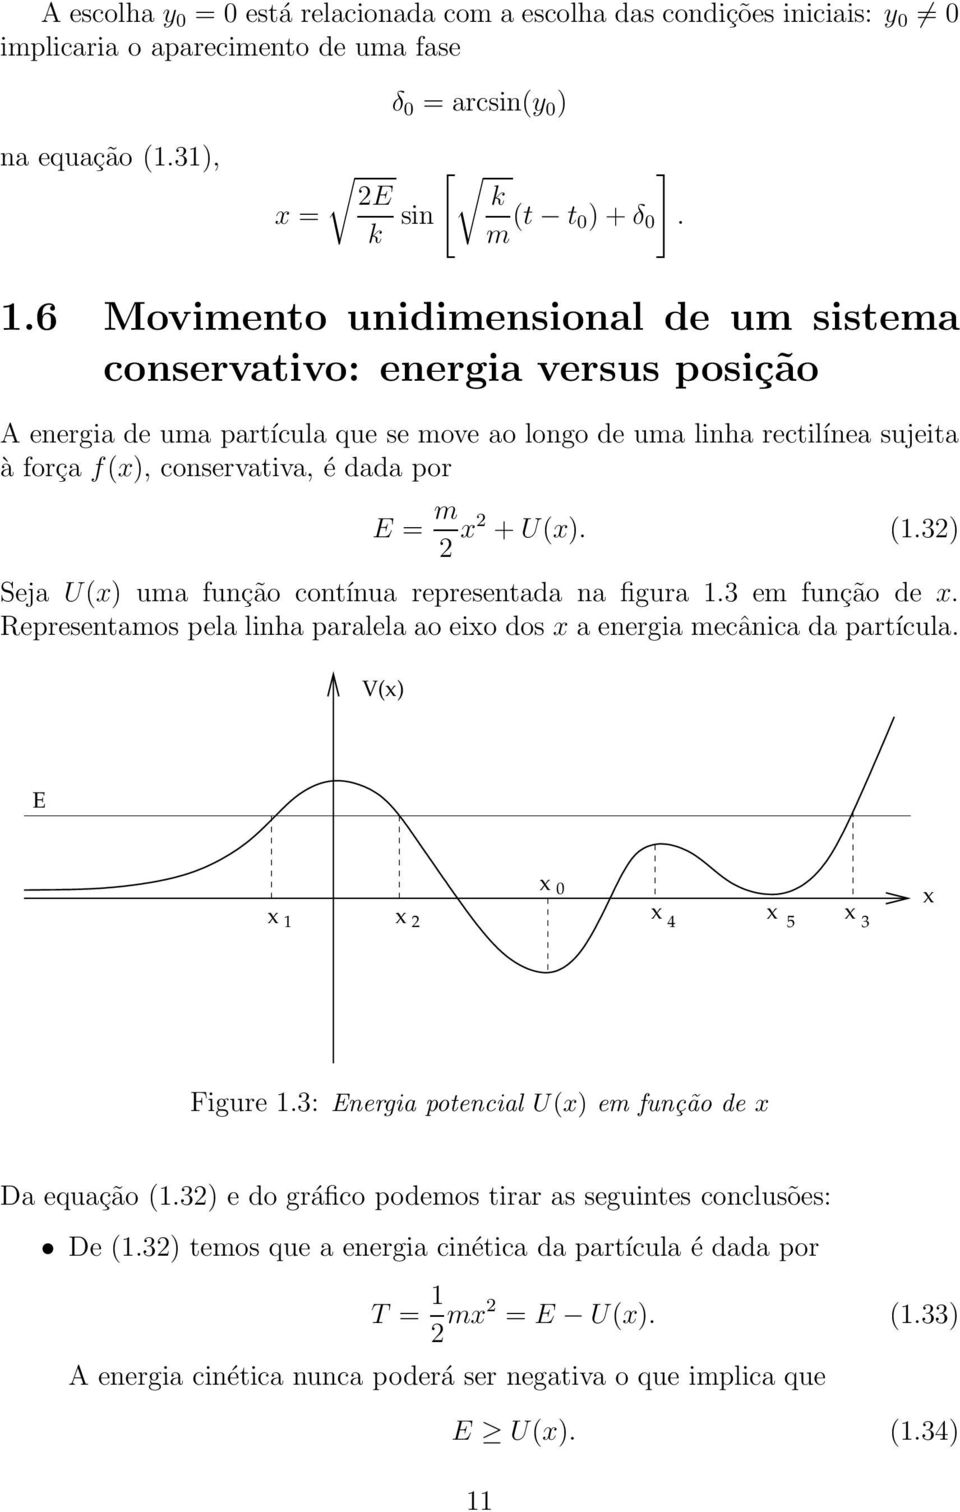 m 2 2 + U(). (1.32) Seja U() uma função contínua representada na figura 1.3 em função de. Representamos pela linha paralela ao eio dos a energia mecânica da partícula. V() E 1 2 0 4 5 3 Figure 1.